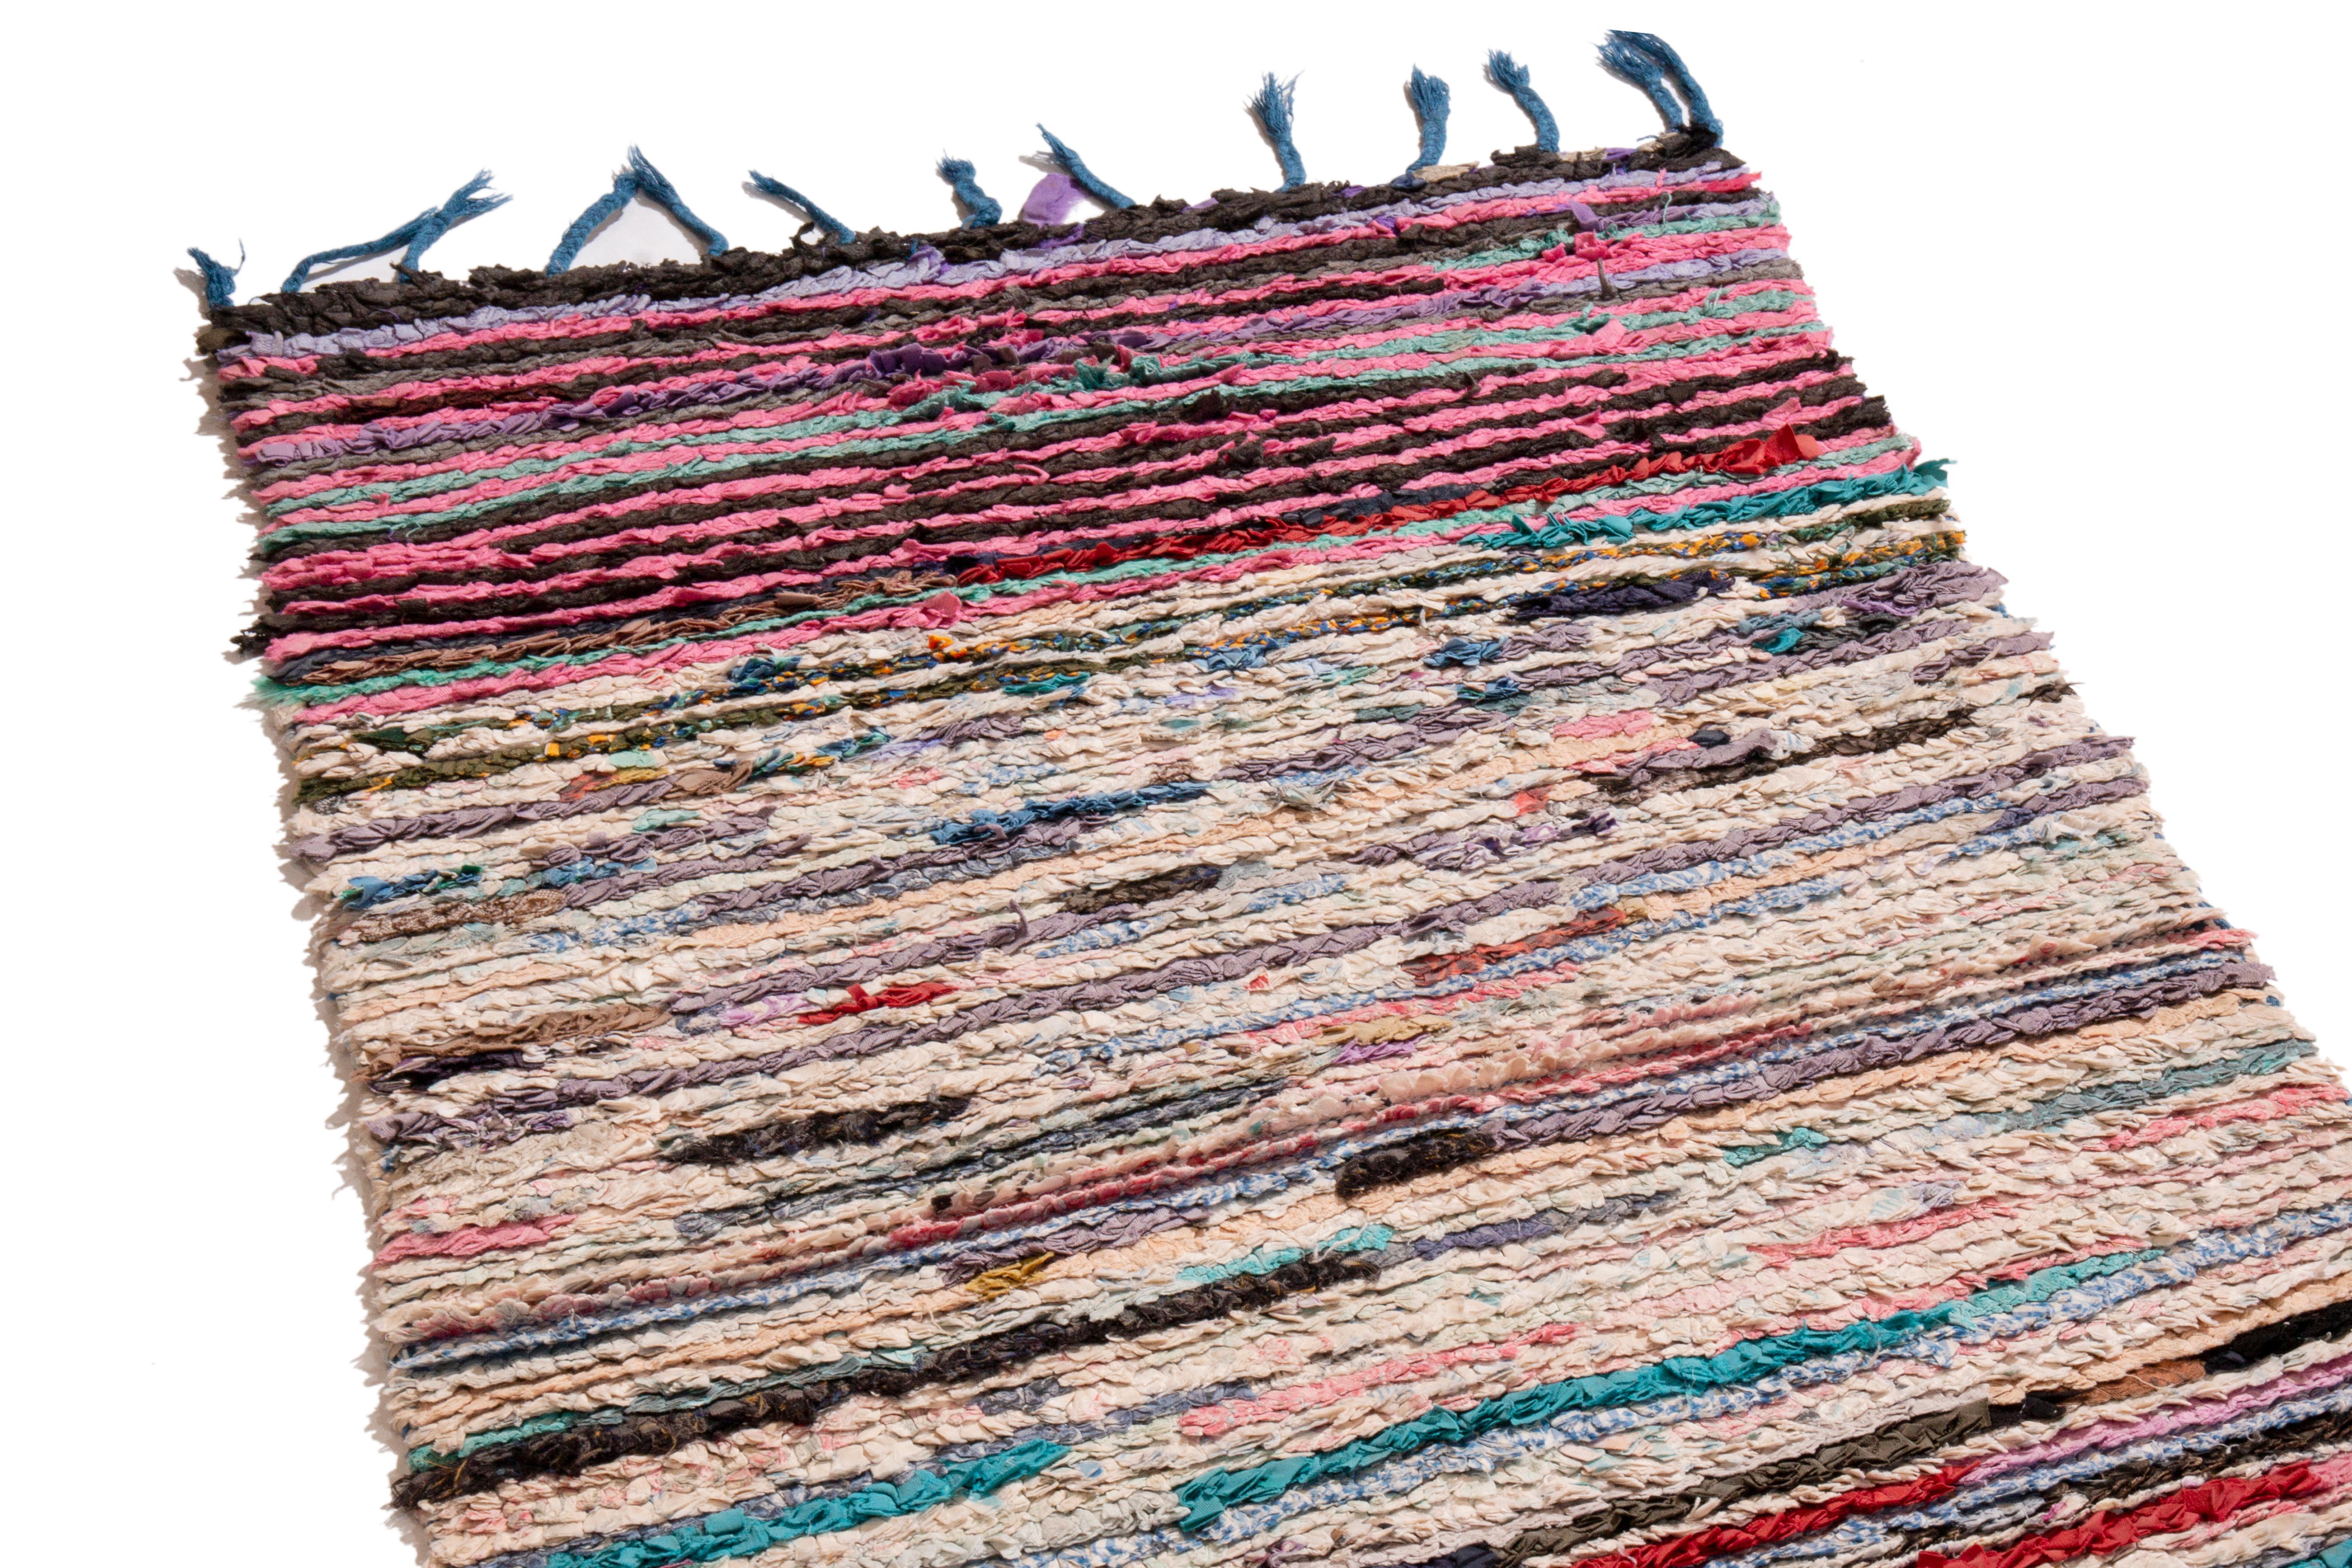 Dieser Vintage-Läufer aus marokkanischer Wolle stammt aus Marokko aus dem Jahr 1950 und zeichnet sich durch eine einzigartige Verteilung der Farbvarianten aus. Das aus hochwertiger Wolle handgeknüpfte All-Over-Feldmuster erzeugt eine besondere